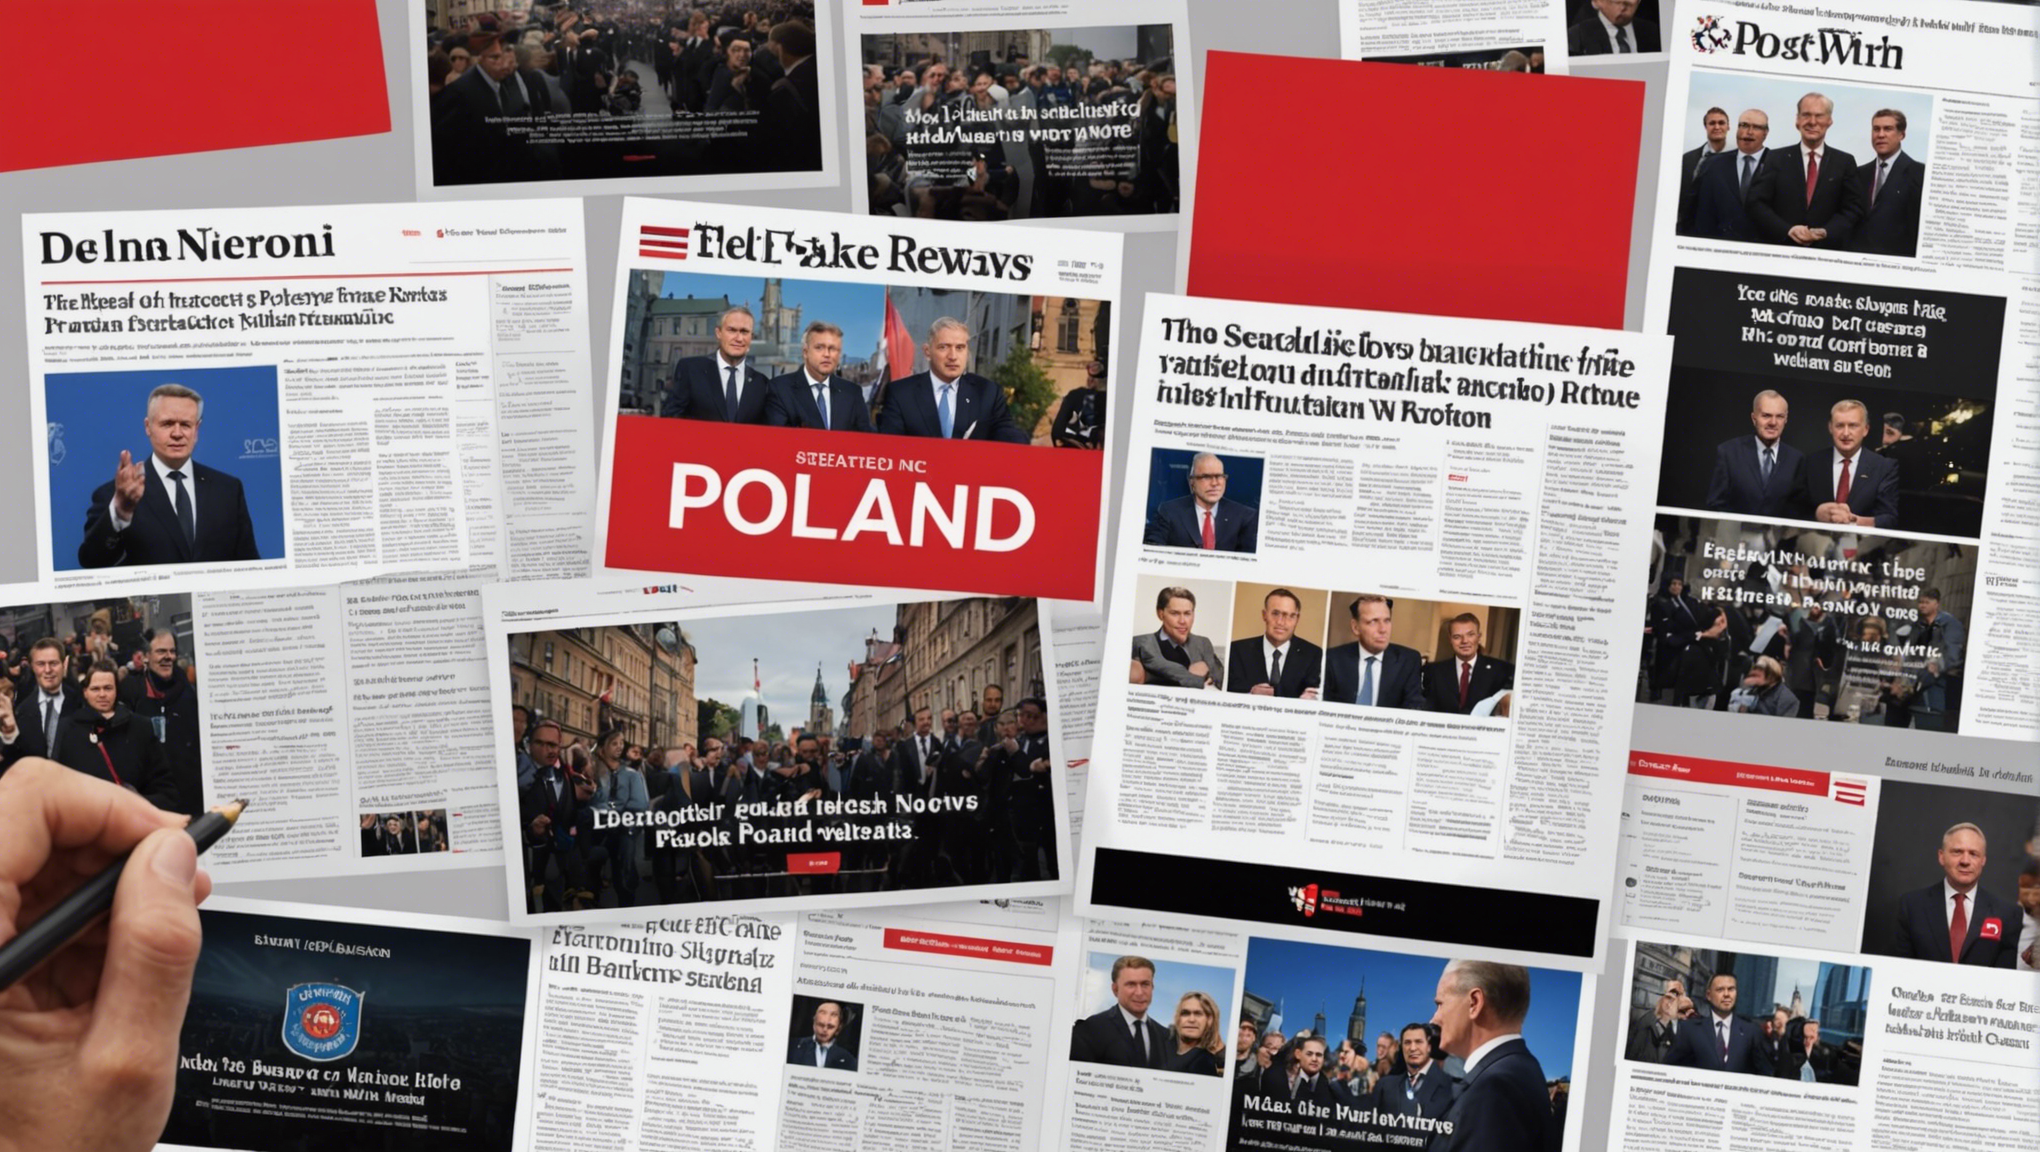 découvrez les implications de la propagation de fausses informations et de la désinformation en pologne, et ses conséquences sur la société et la démocratie.